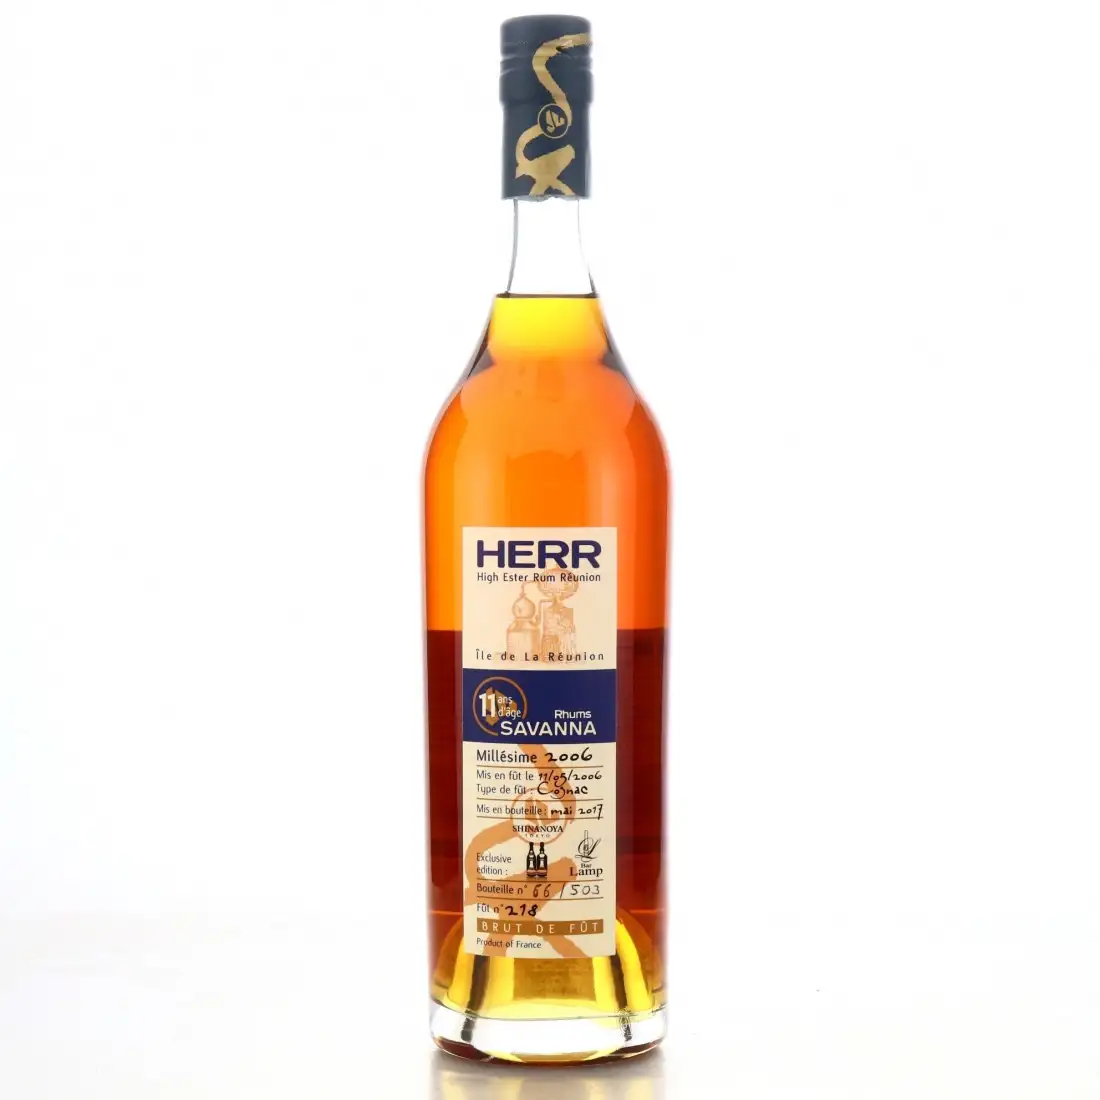 Image of the front of the bottle of the rum HERR Bottled for Shinanoya & Bar Lamp HERR